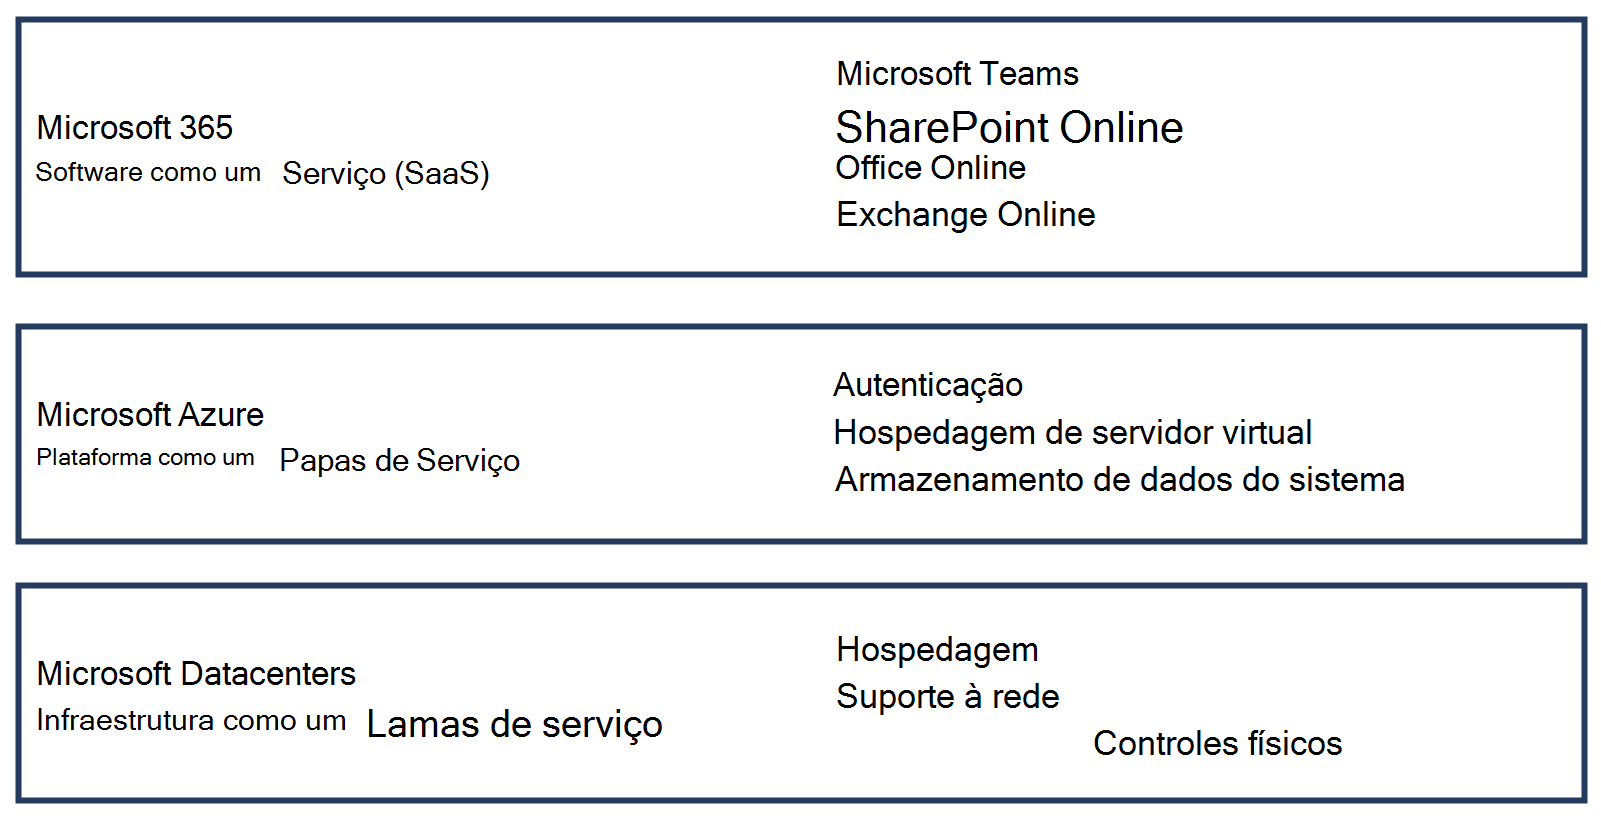 Diagrama mostrando as distinções entre o Software como Serviço do Microsoft 365, a Plataforma como Serviço do Microsoft Azure e a Infraestrutura como Serviço dos Datacenters da Microsoft.